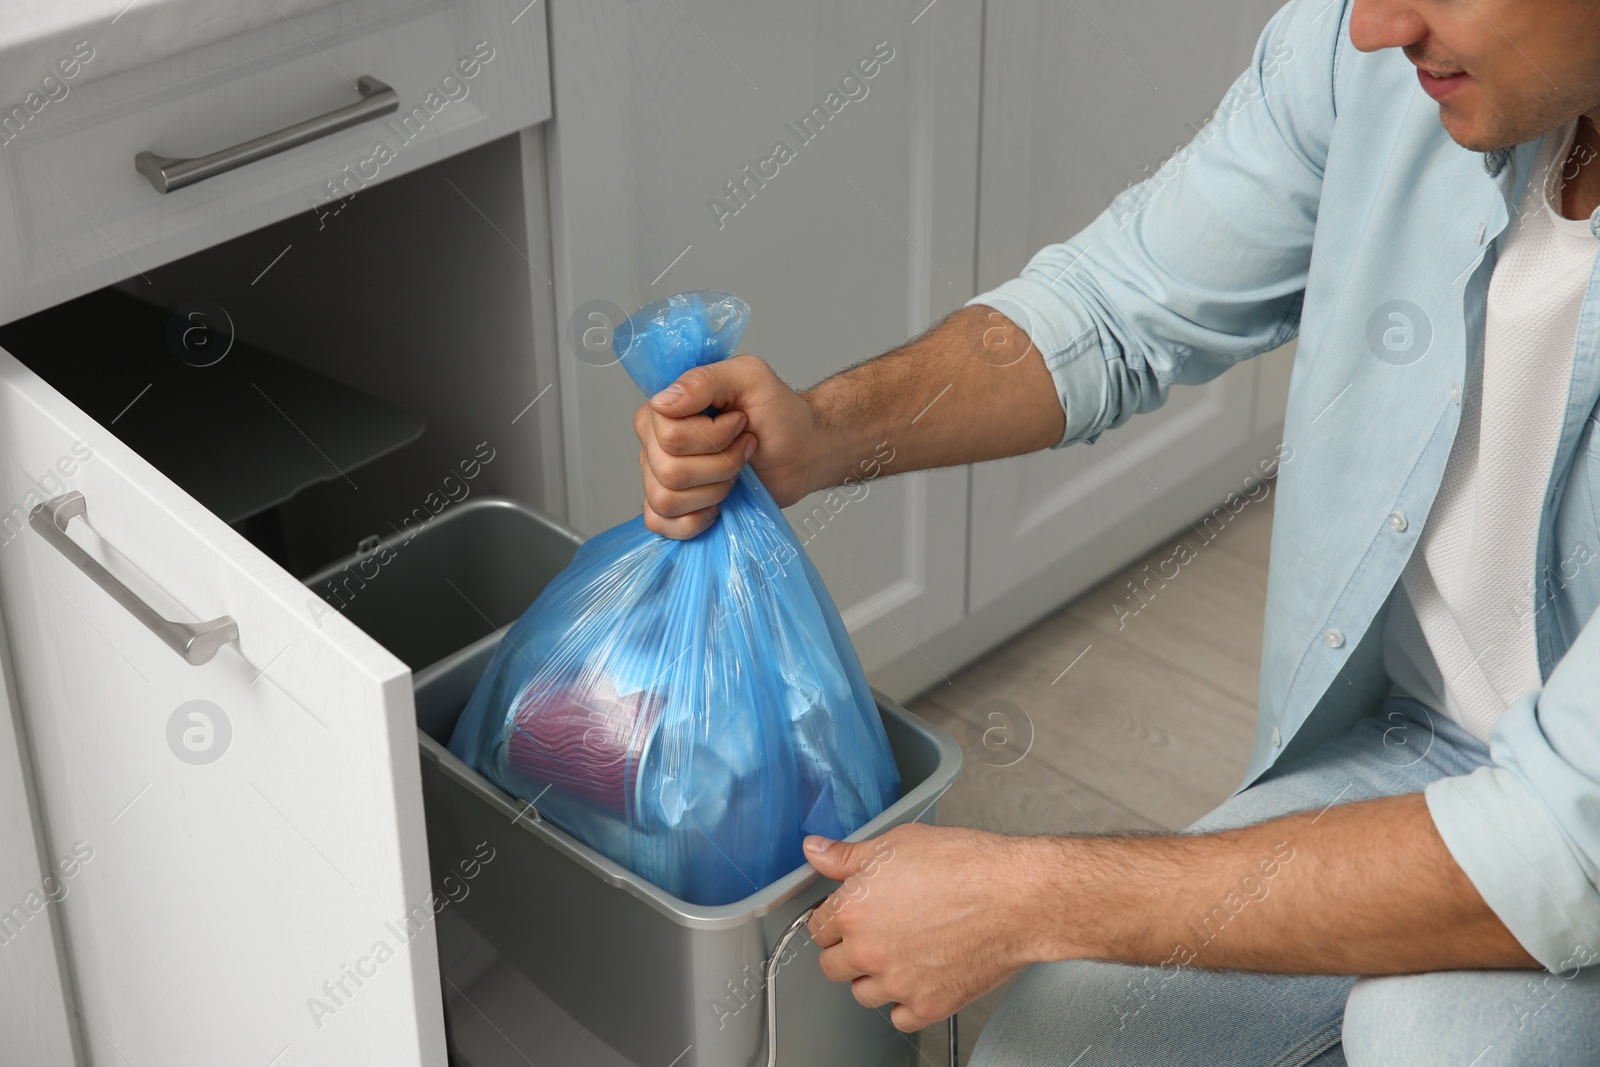 Photo of Man taking garbage bag out of bin at home, closeup